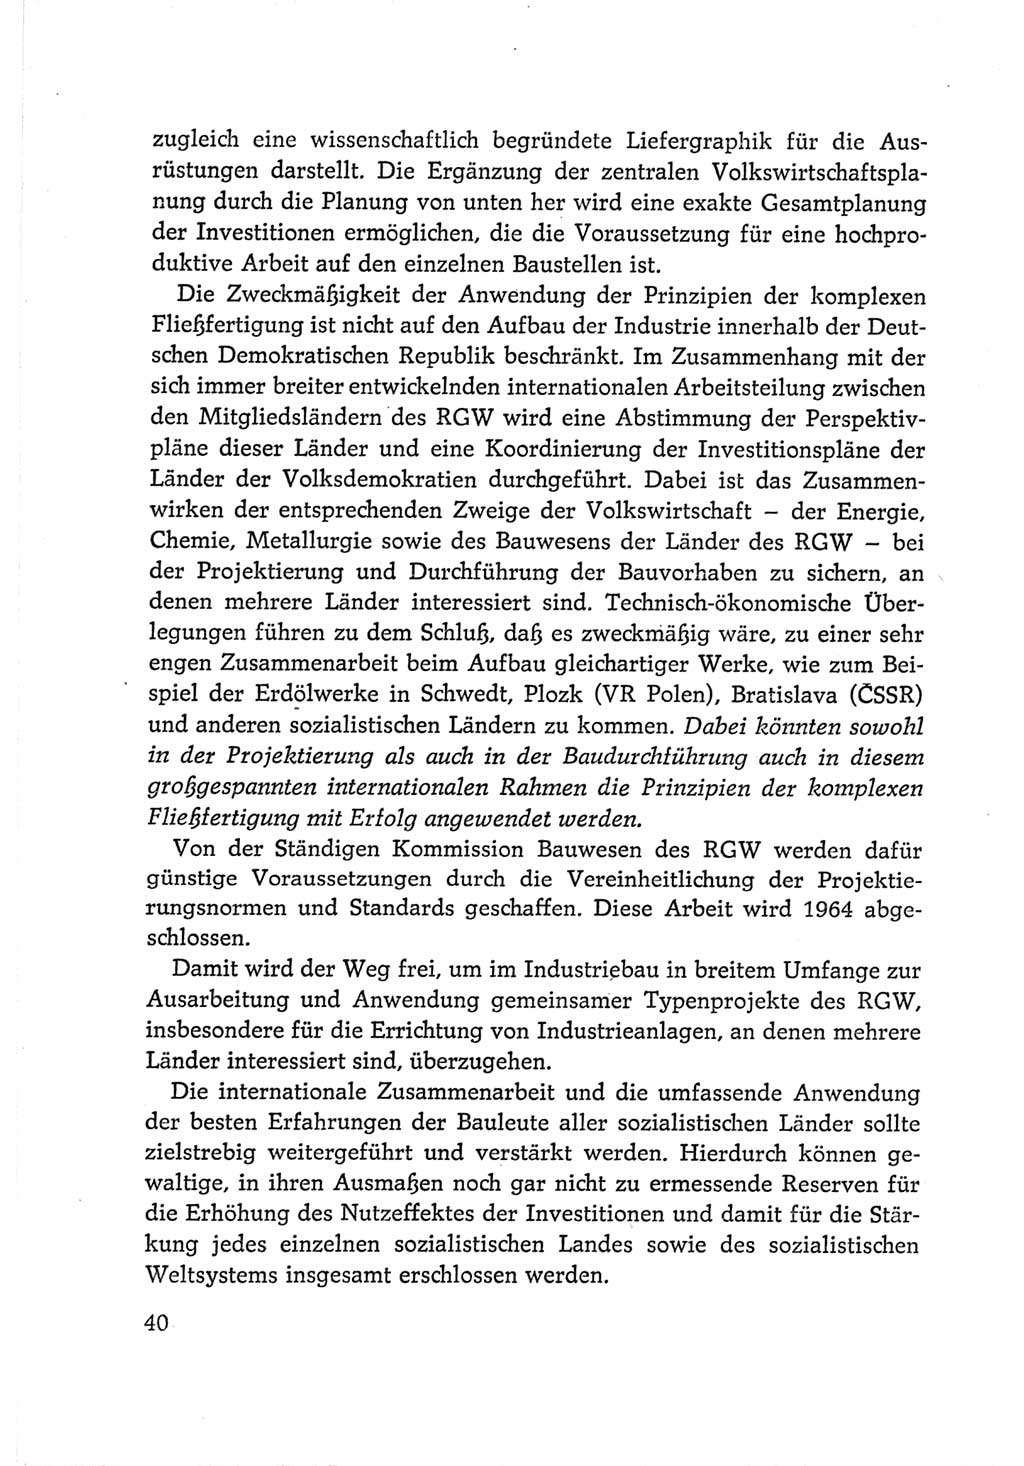 Protokoll der Verhandlungen des Ⅵ. Parteitages der Sozialistischen Einheitspartei Deutschlands (SED) [Deutsche Demokratische Republik (DDR)] 1963, Band Ⅱ, Seite 40 (Prot. Verh. Ⅵ. PT SED DDR 1963, Bd. Ⅱ, S. 40)